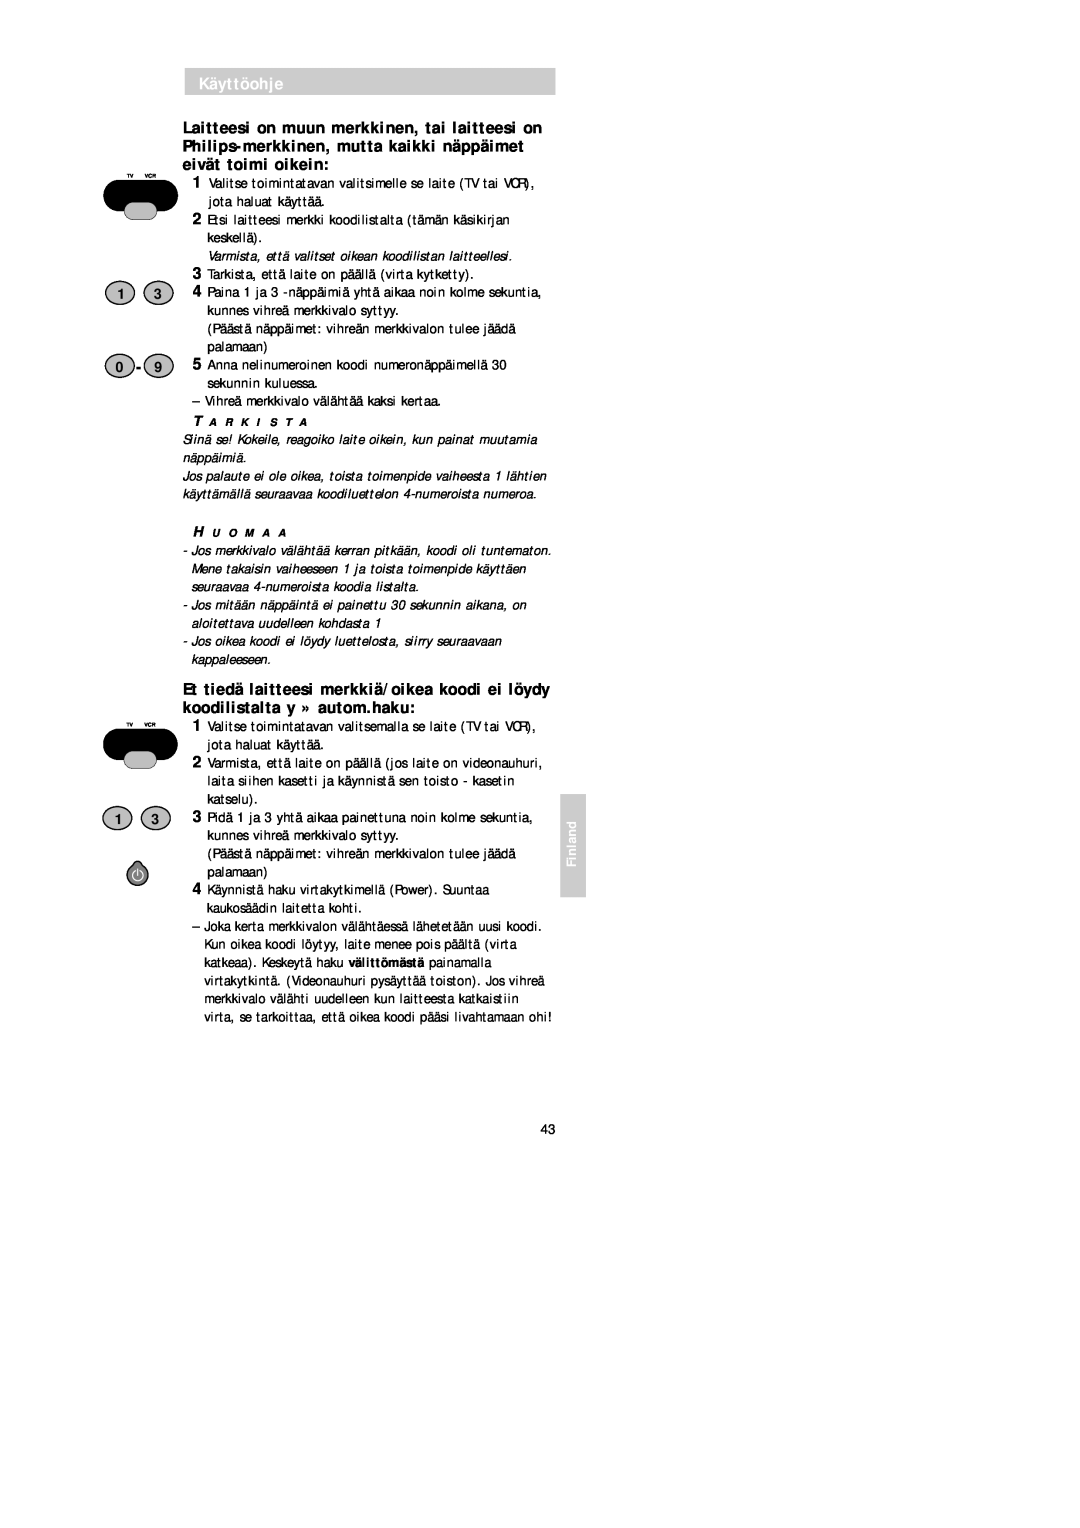 Philips SBC RU 520 manual Käyttöohje, Varmista, että valitset oikean koodilistan laitteellesi, Finland 